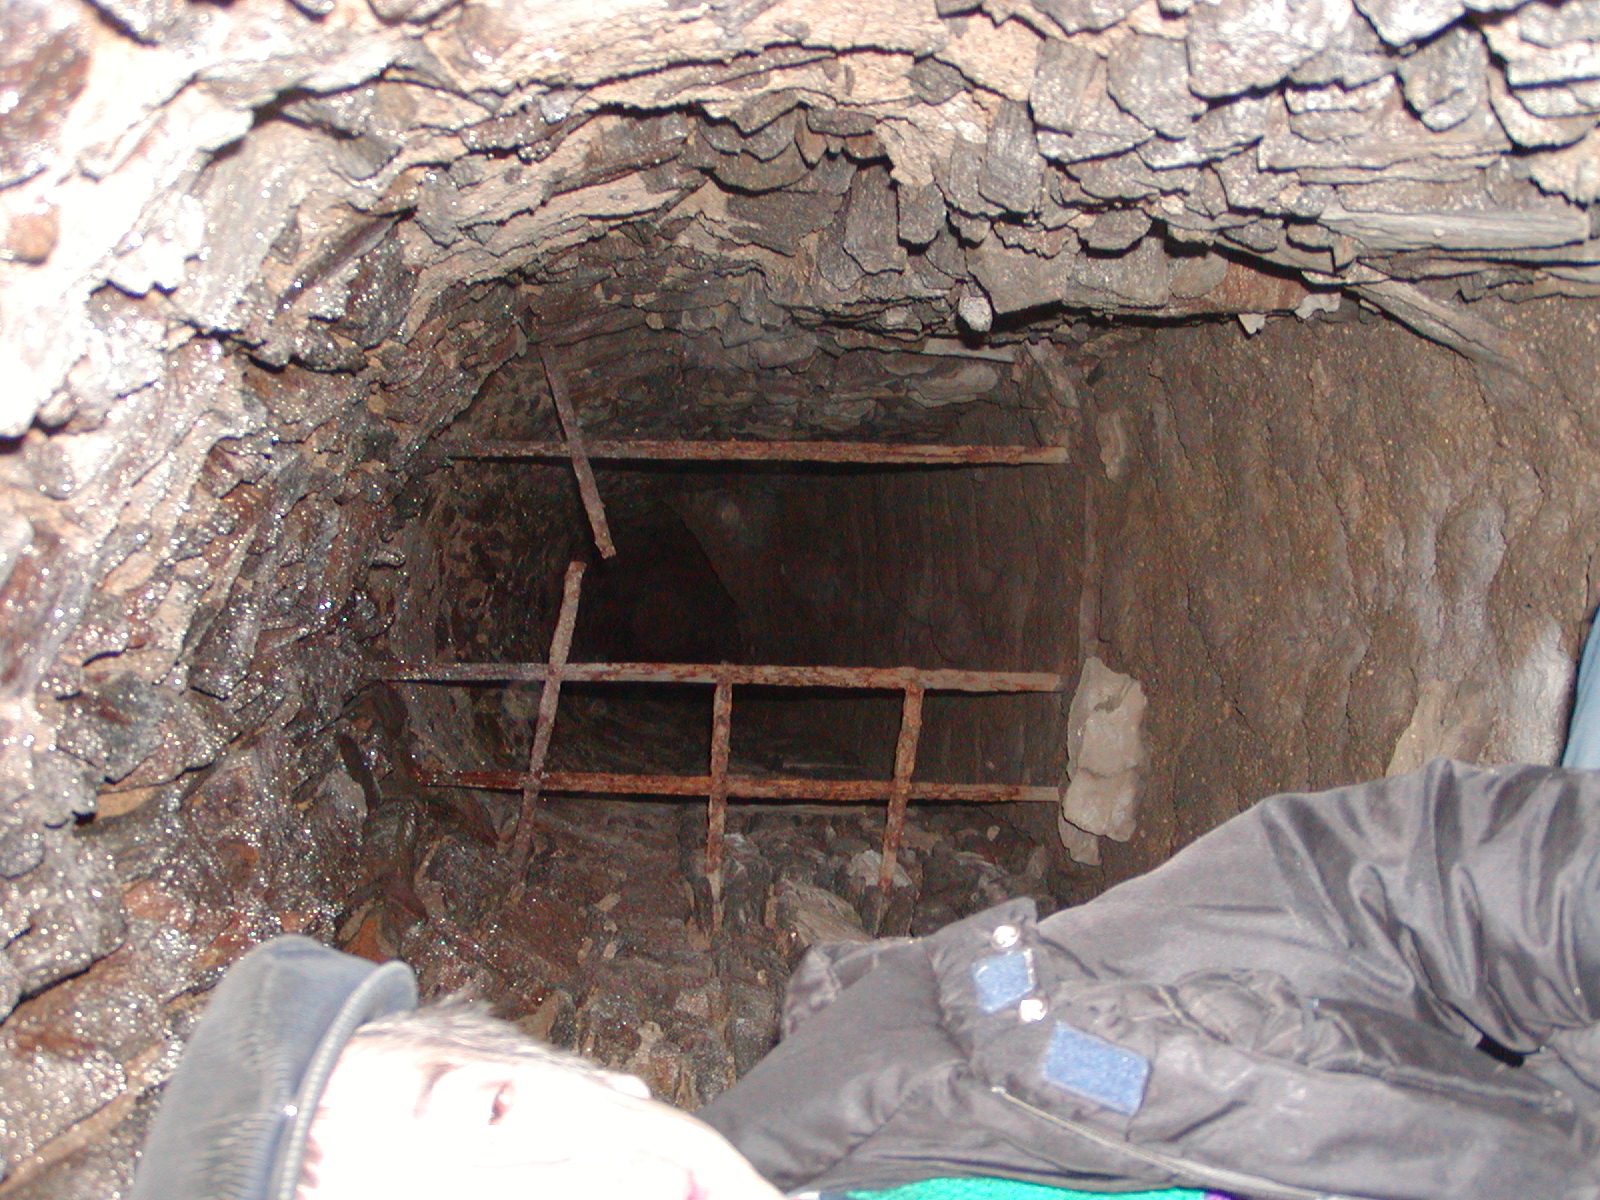 Původní historické podzemí 7.